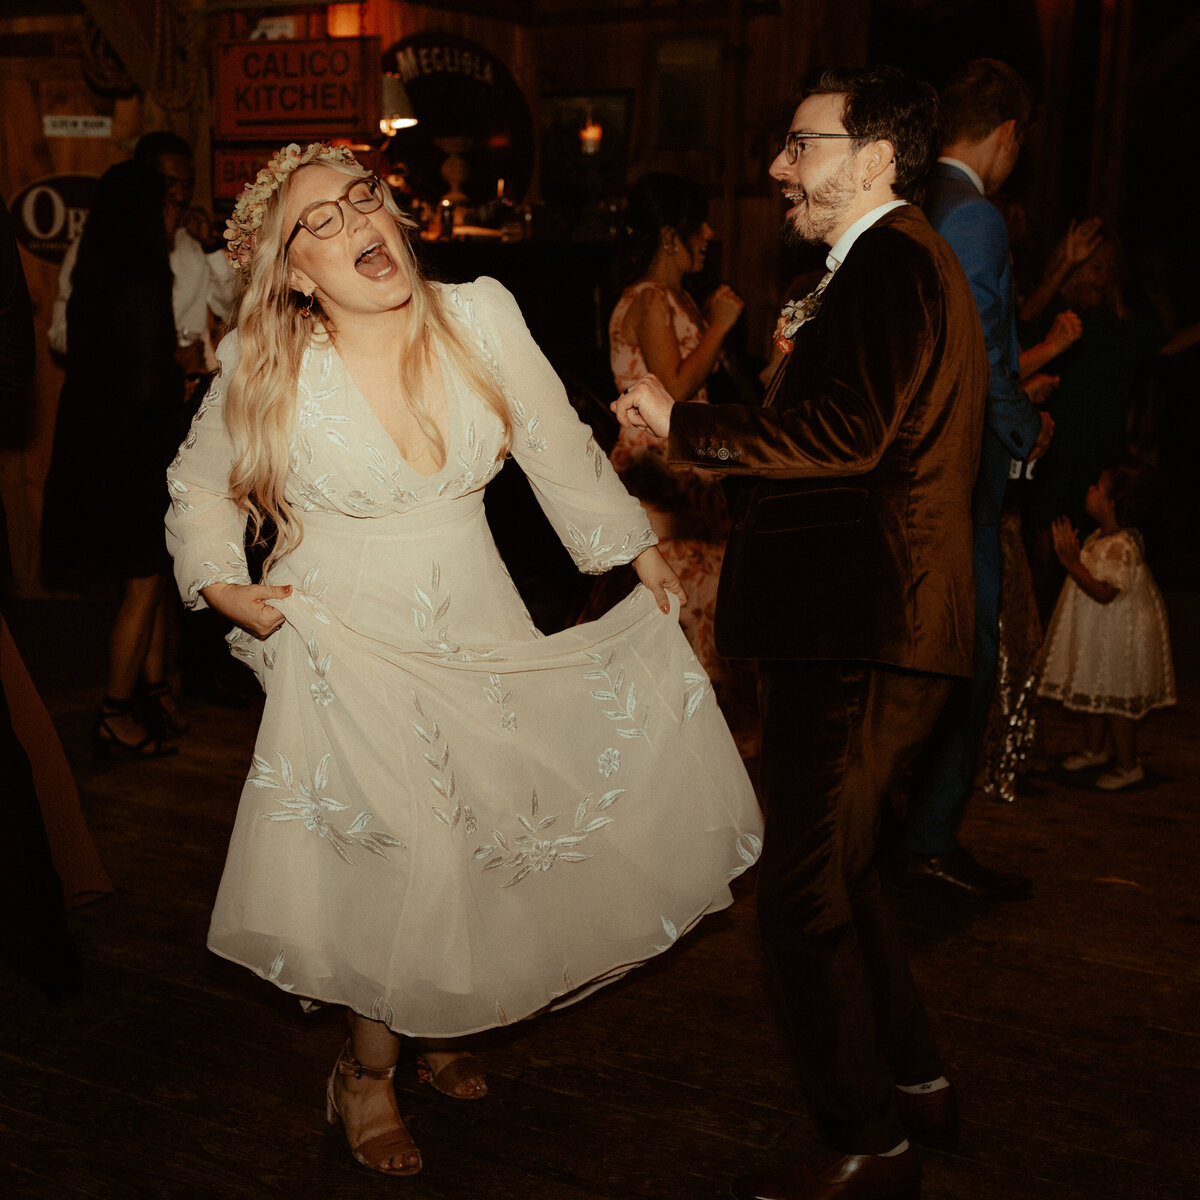 candid-dancing-wedding-photo